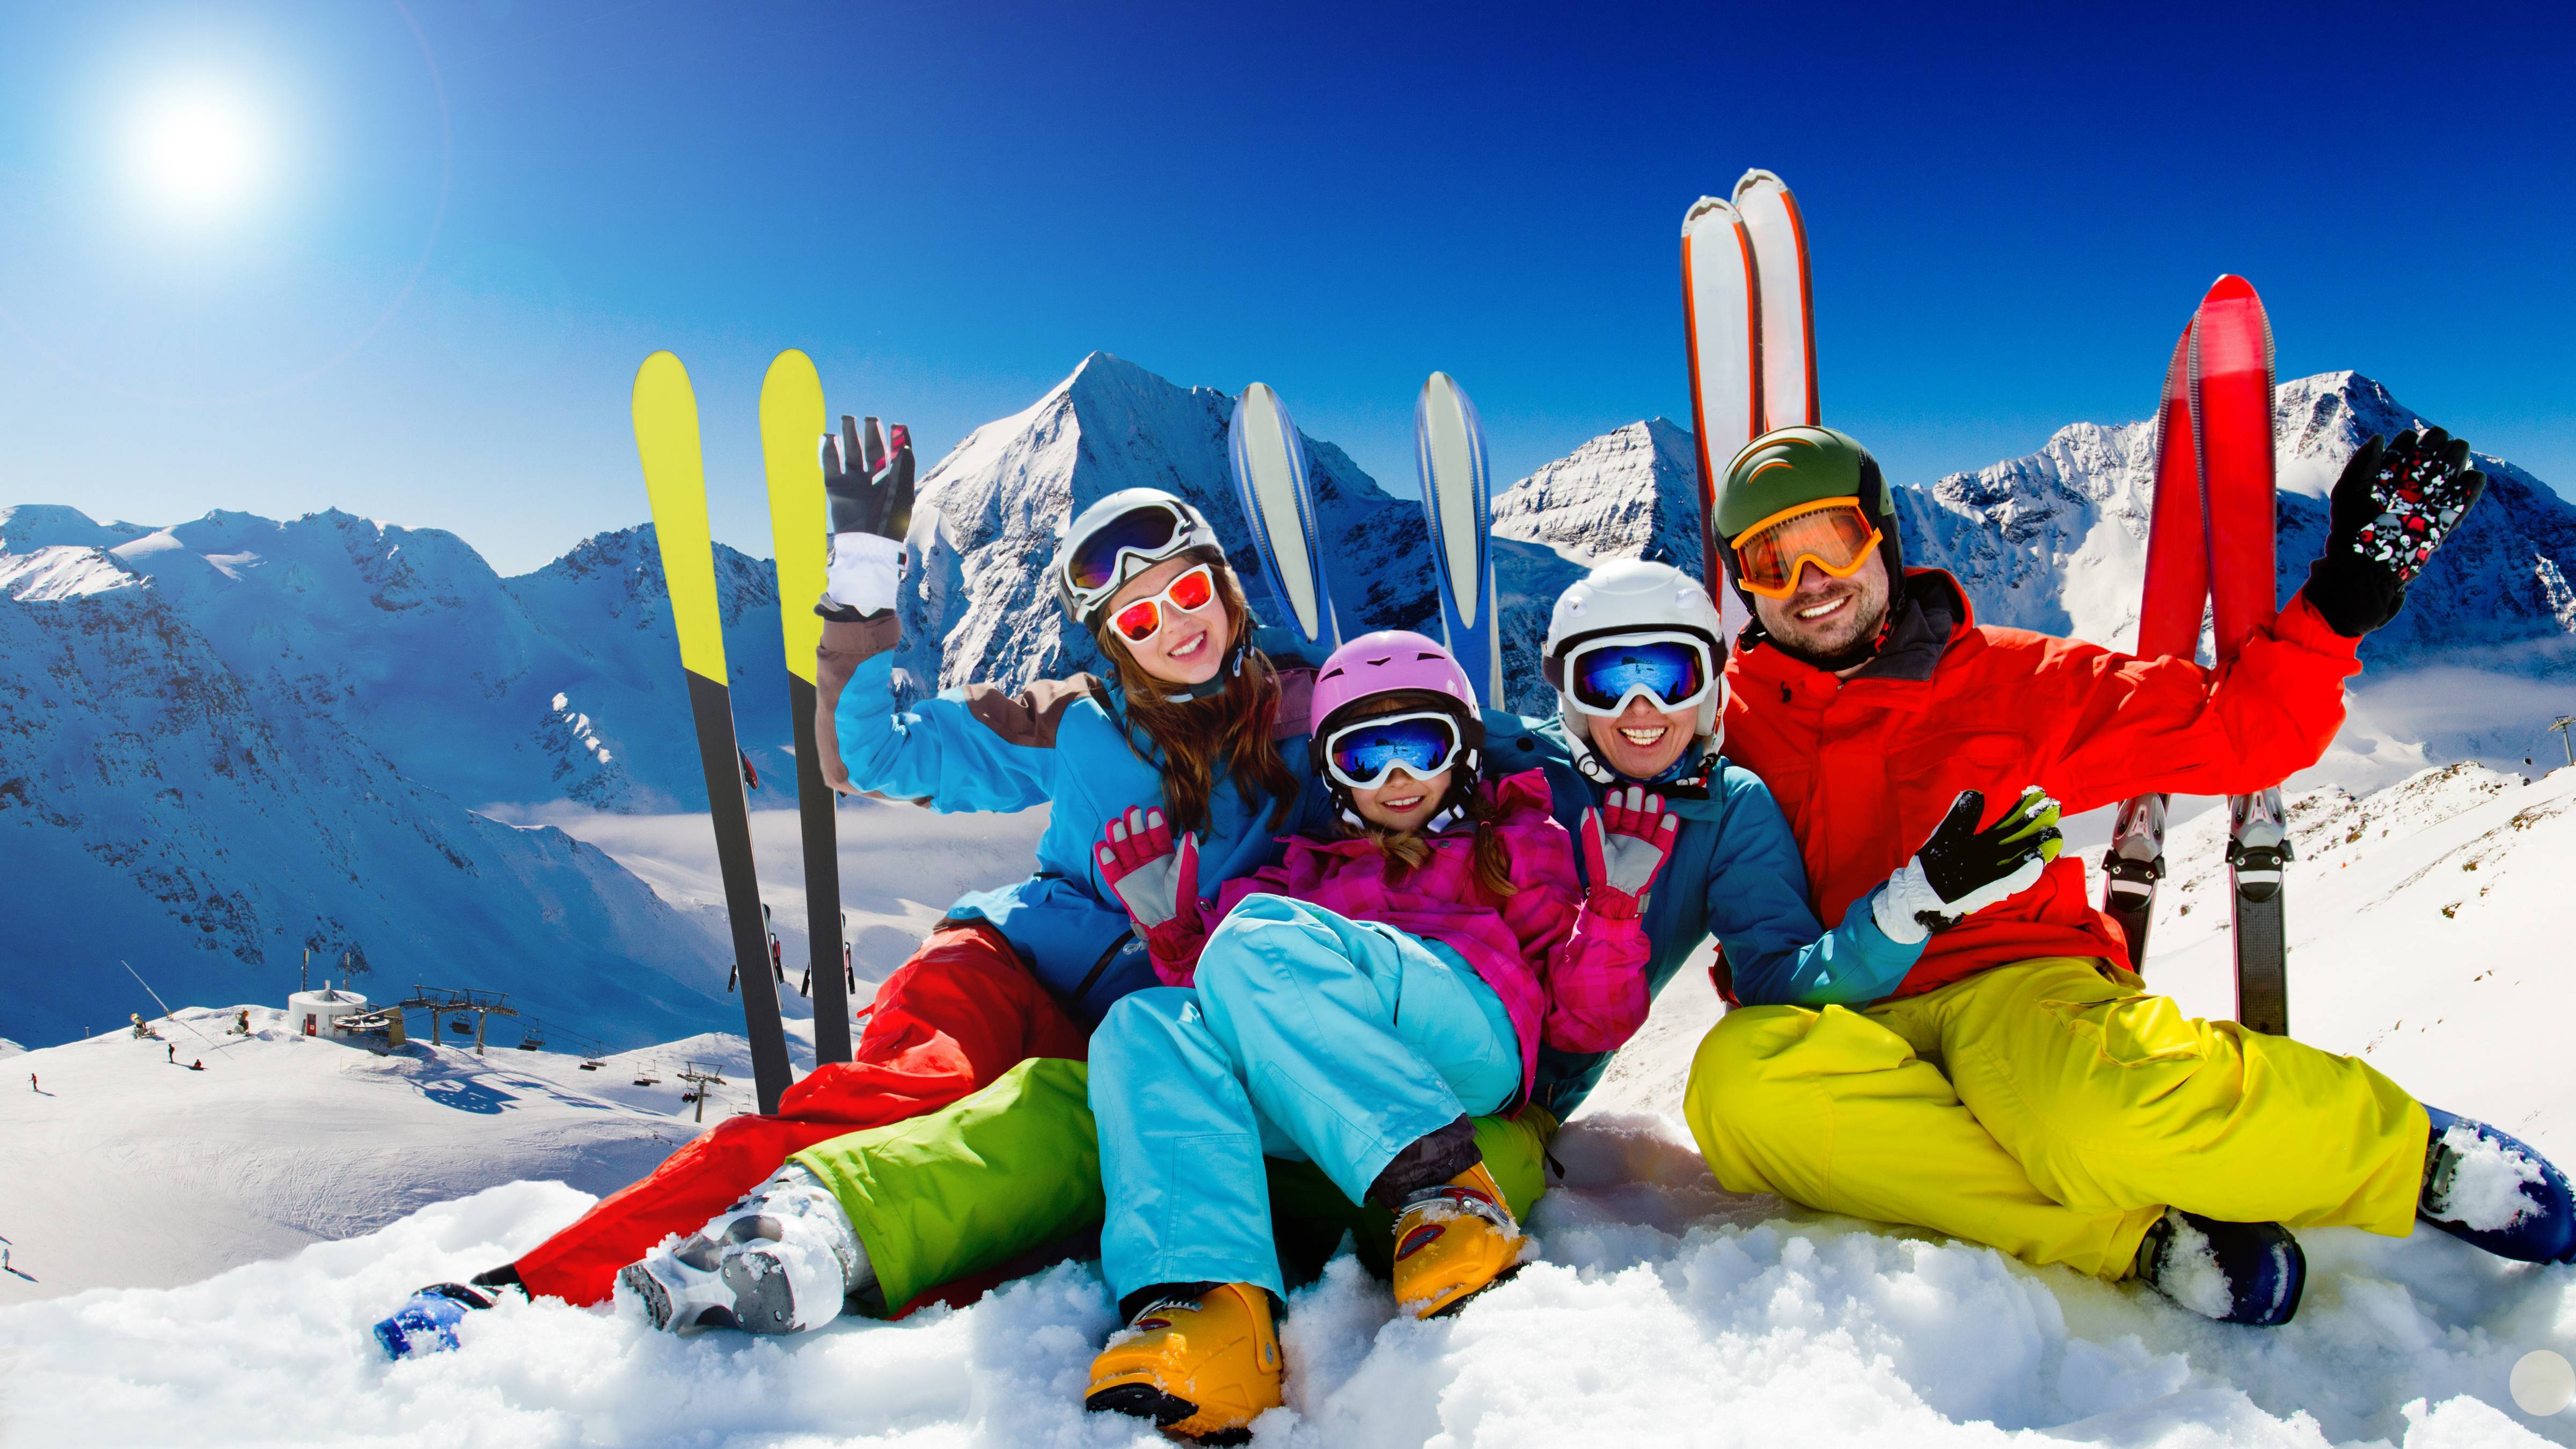 Семья лыжников. Семья на горных лыжах. Горнолыжный спорт. Семья катается на лыжах в горах. Зимний курорт.